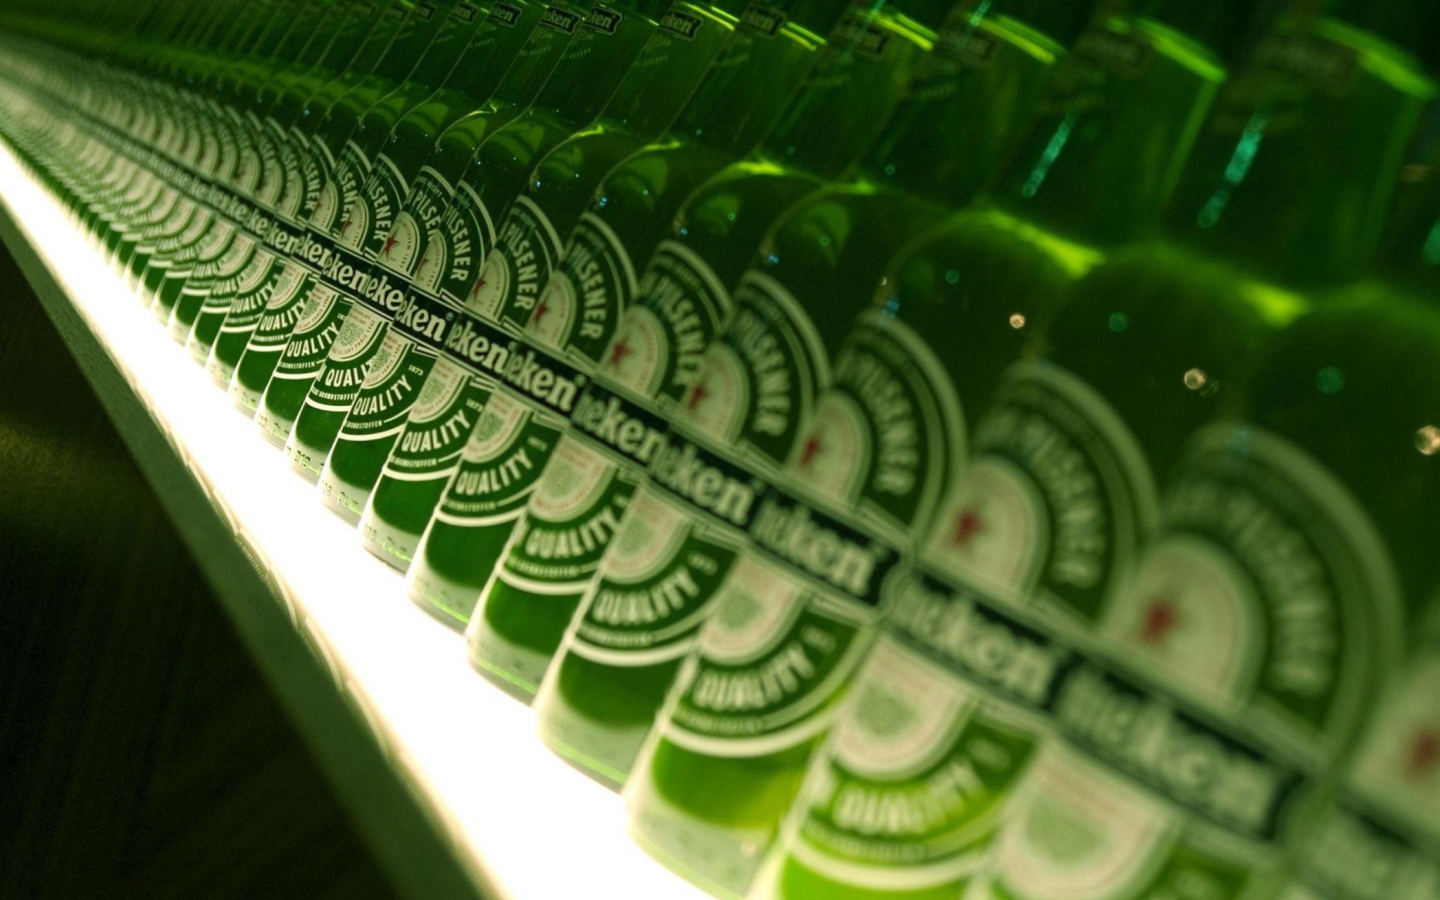 Das Heineken Beer Wallpaper 1440x900